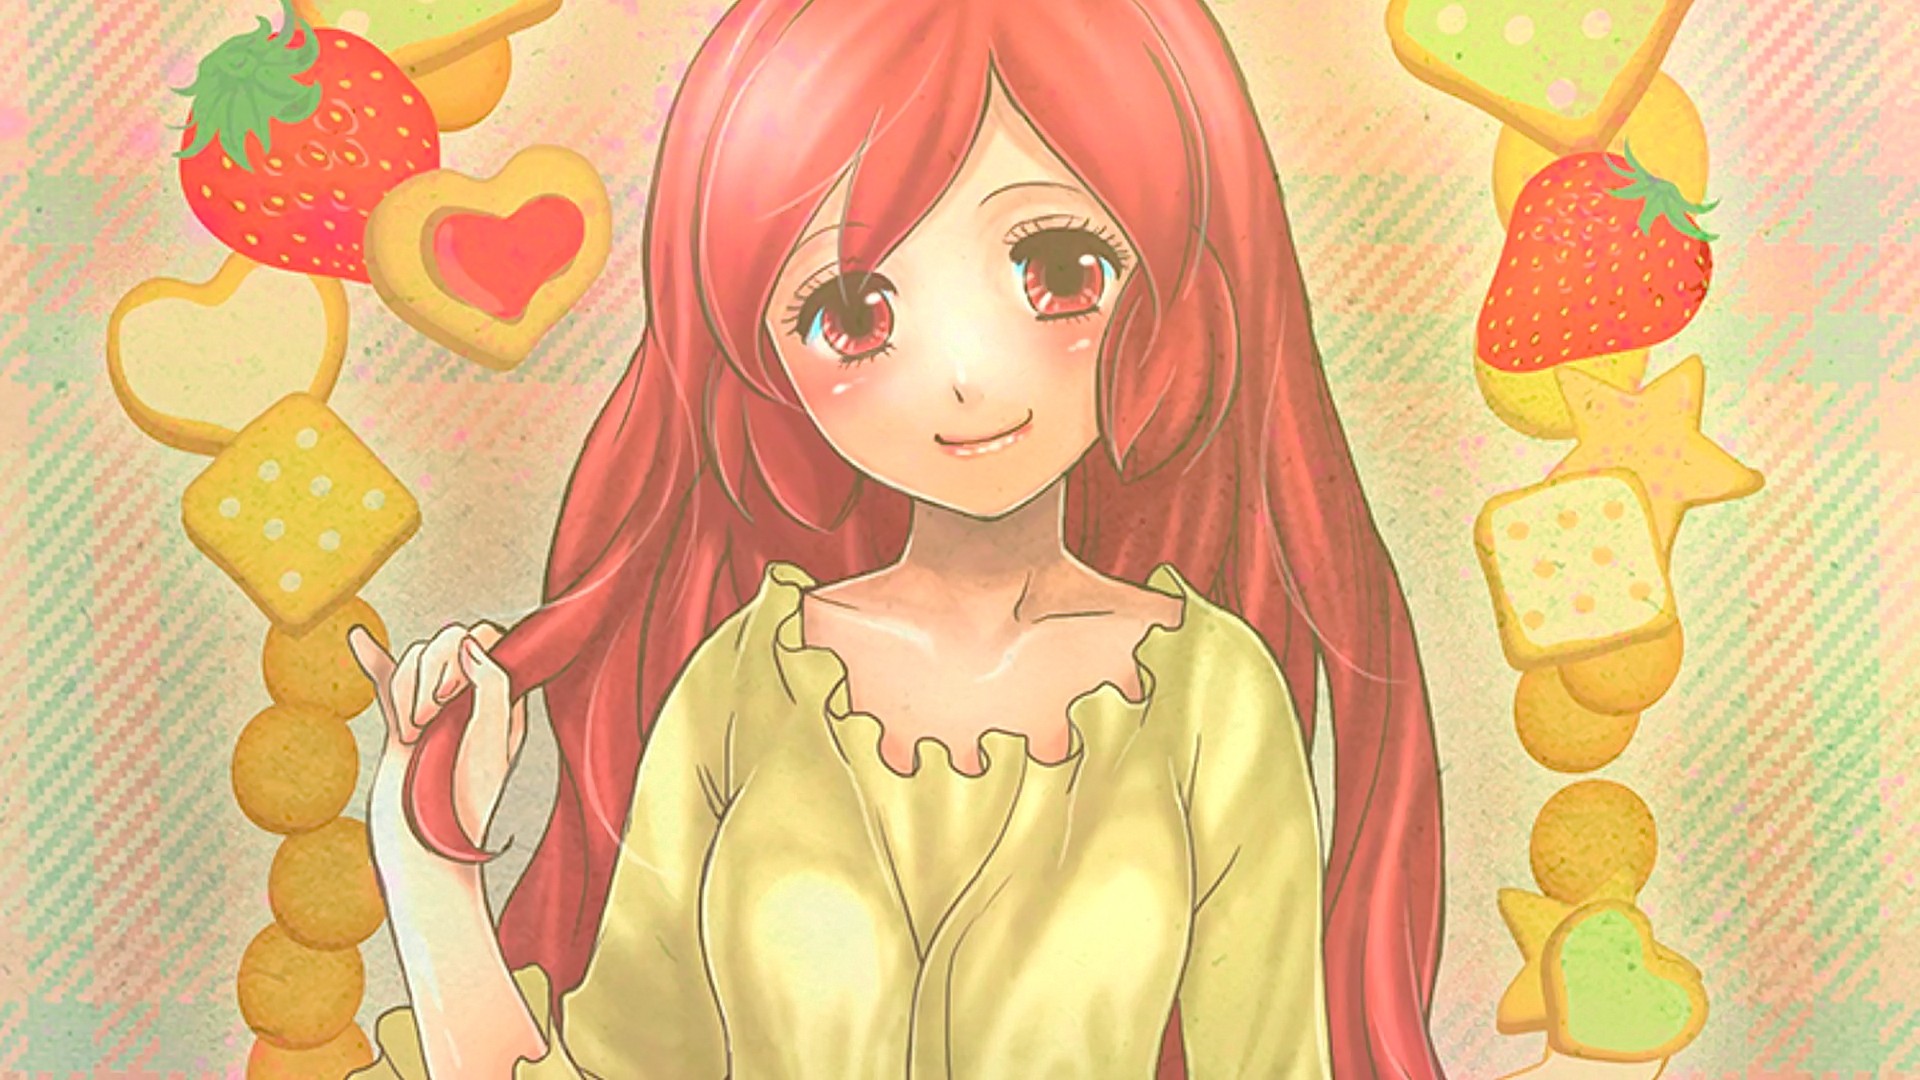 Anime 1920x1080 anime anime girls cookies strawberries redhead red eyes long hair Serara Log Horizon food fruit cake smiling yellow clothing